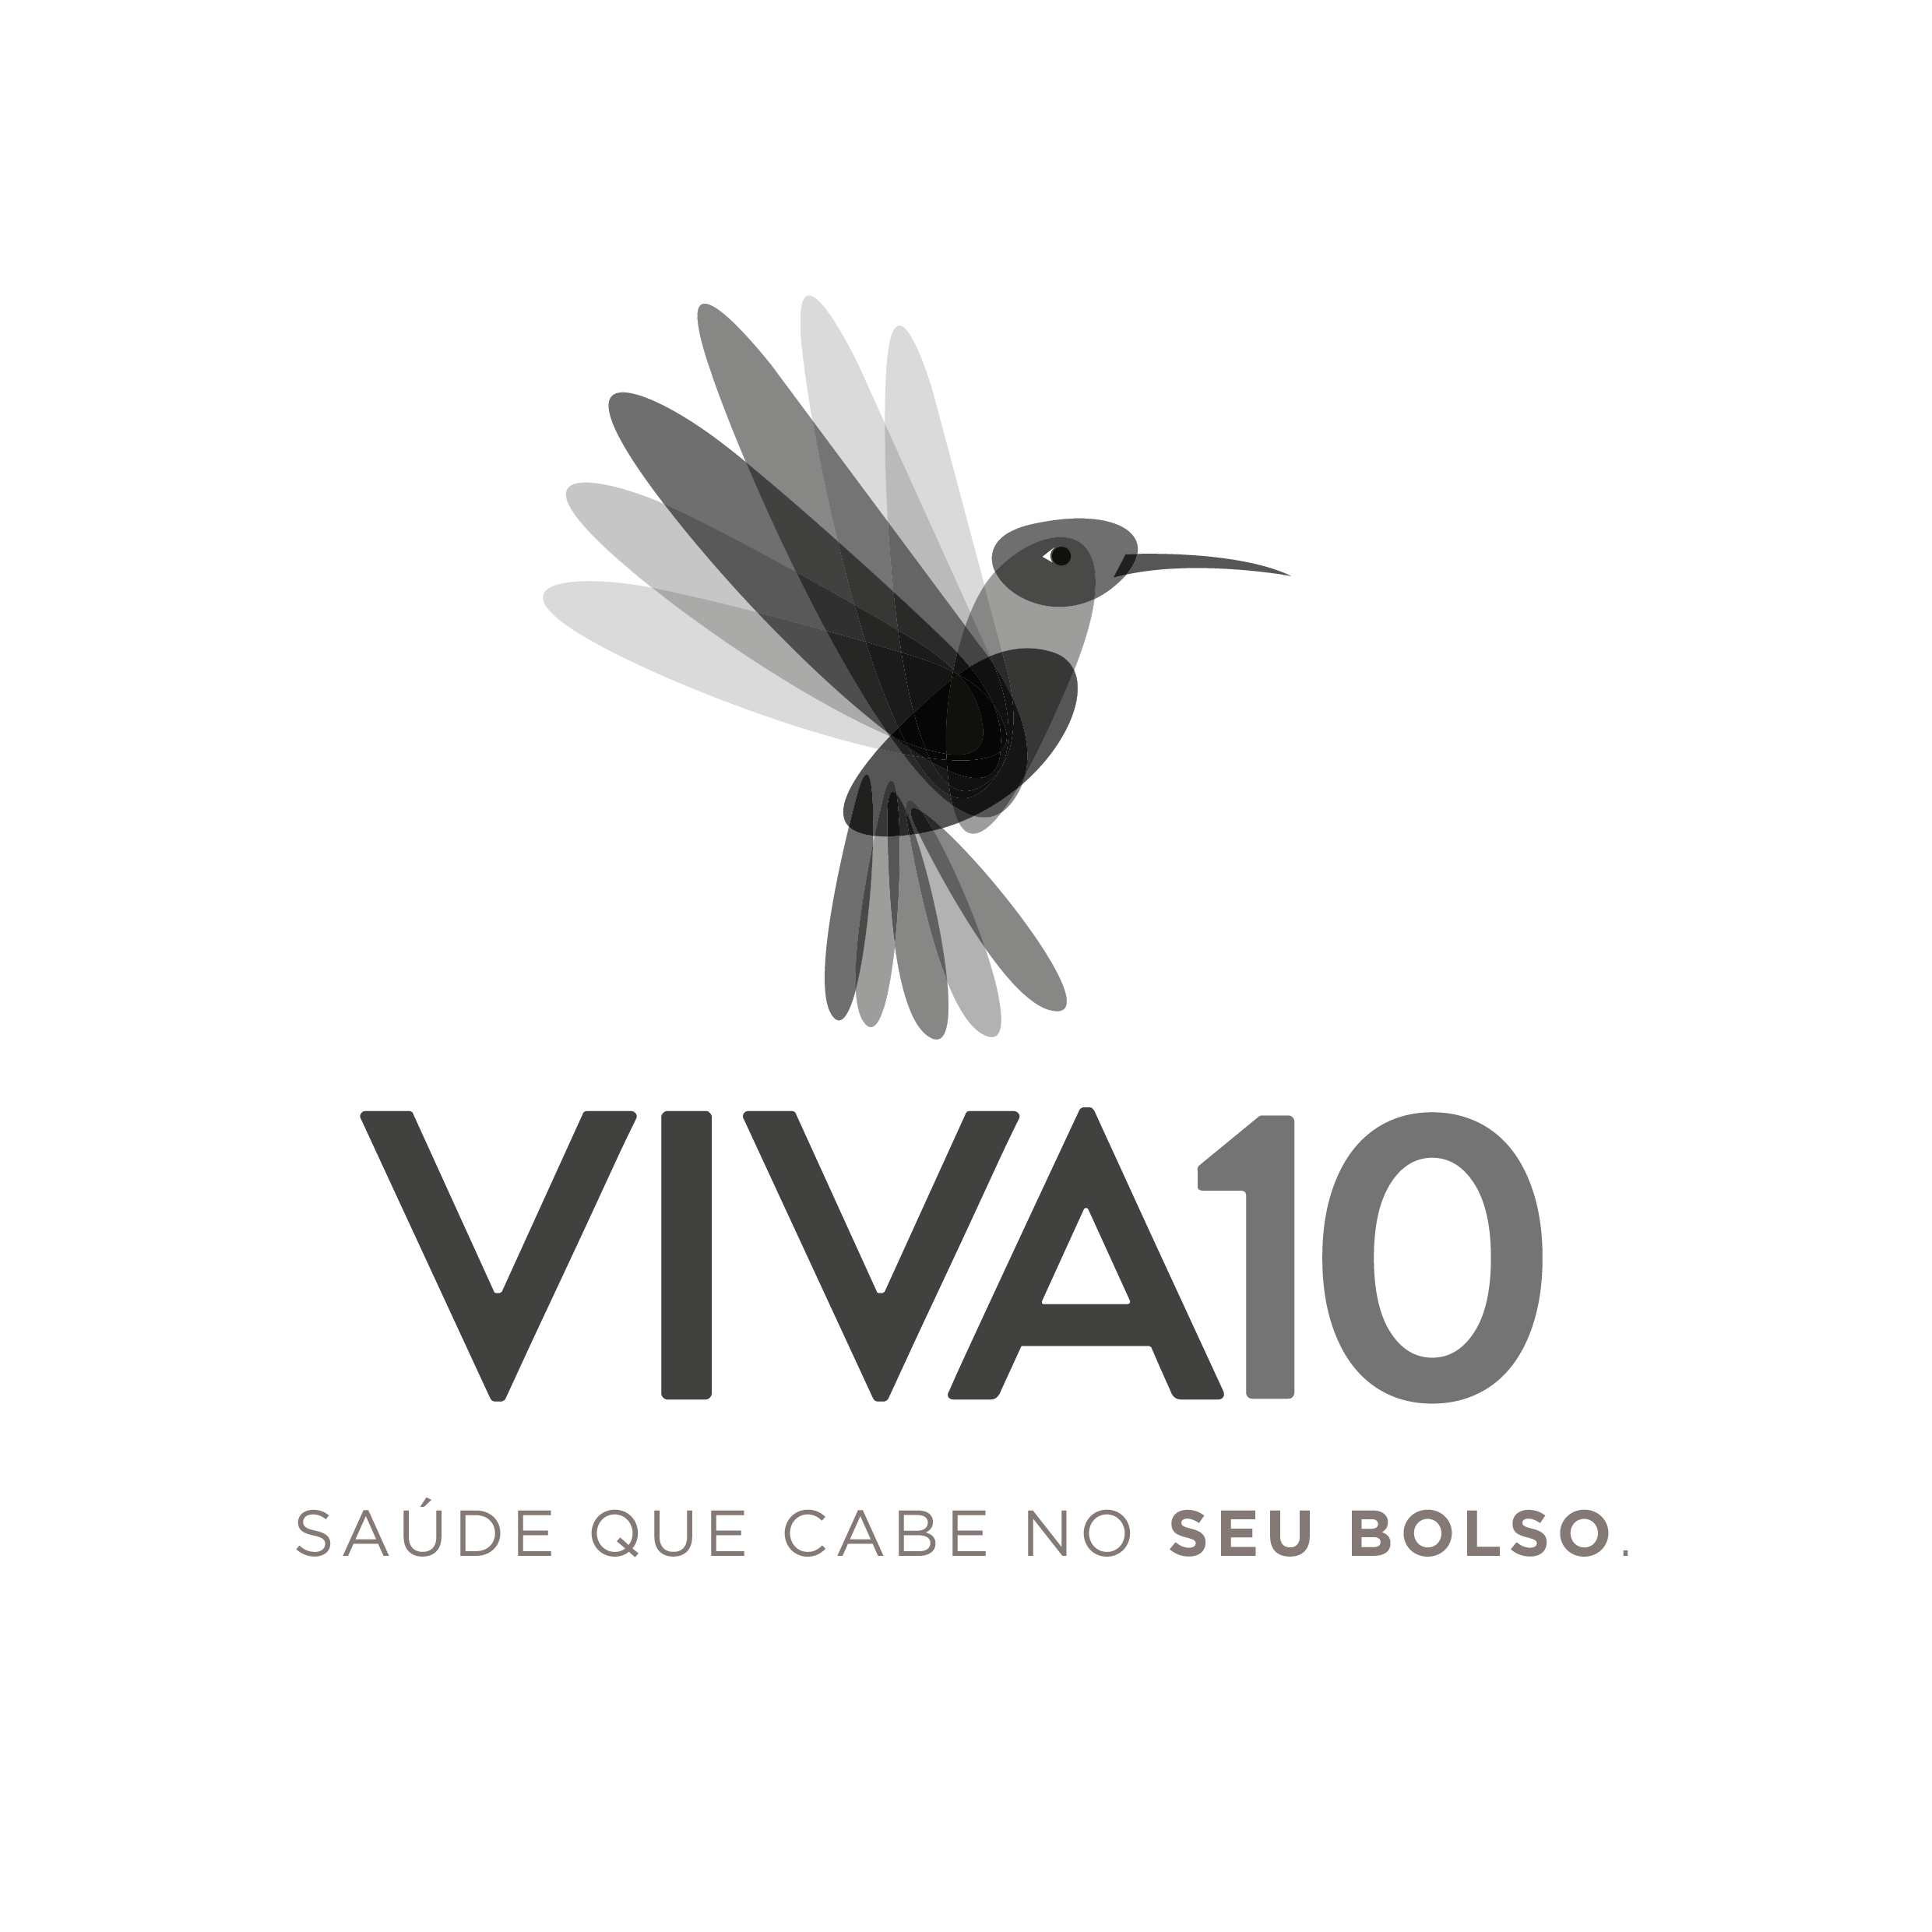 VIVA10 Logo